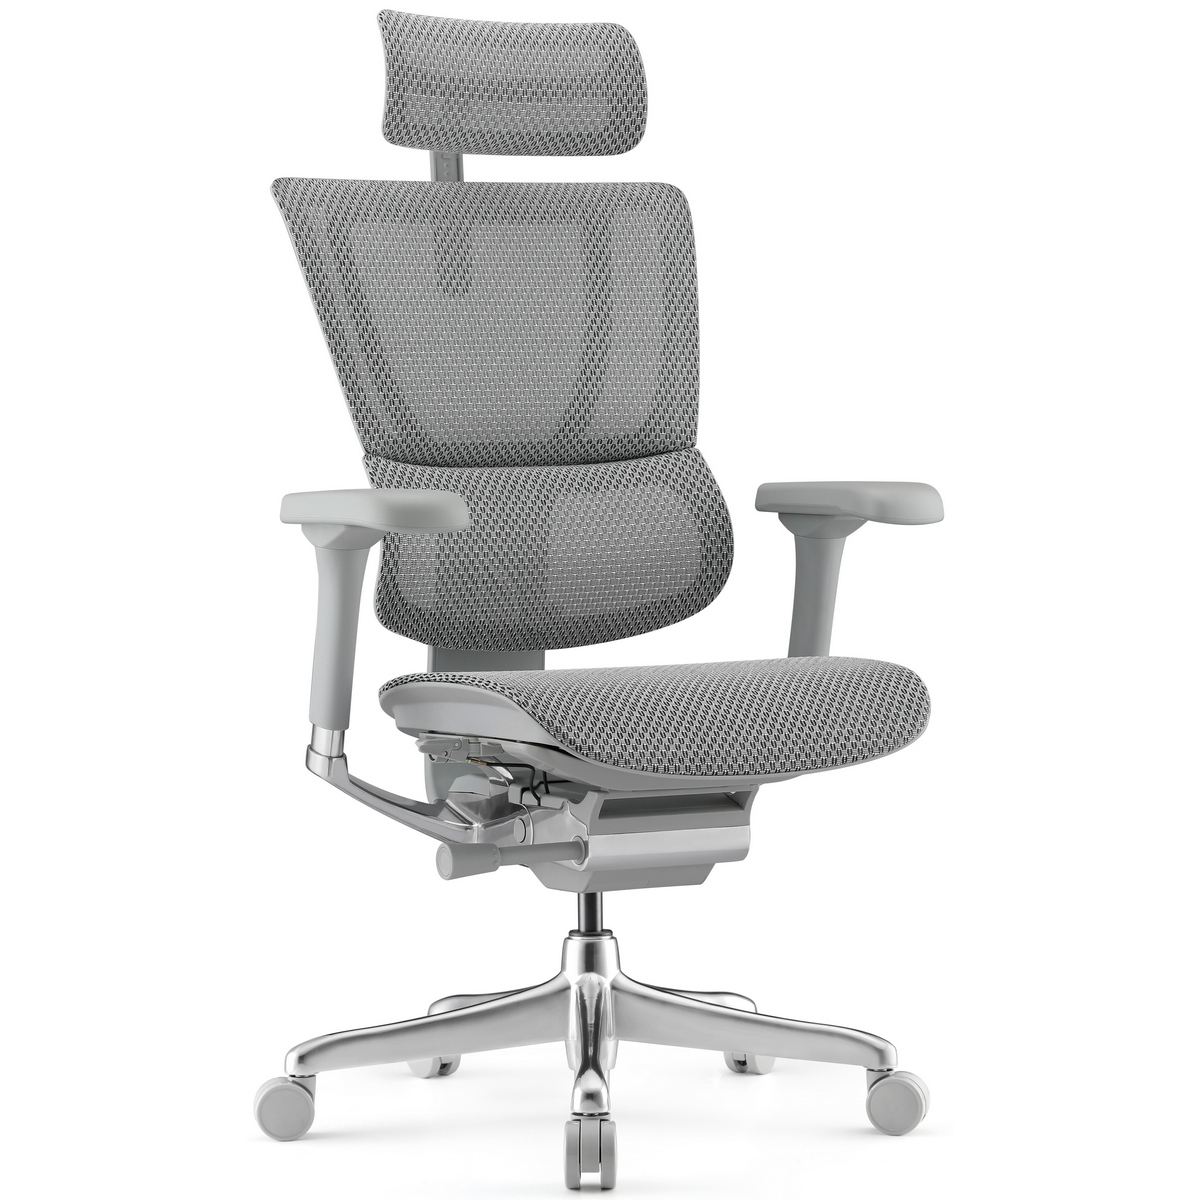 Фото Ортопедическое офисное кресло Falto IOO-E2 Elite (серое, крестовина металл)